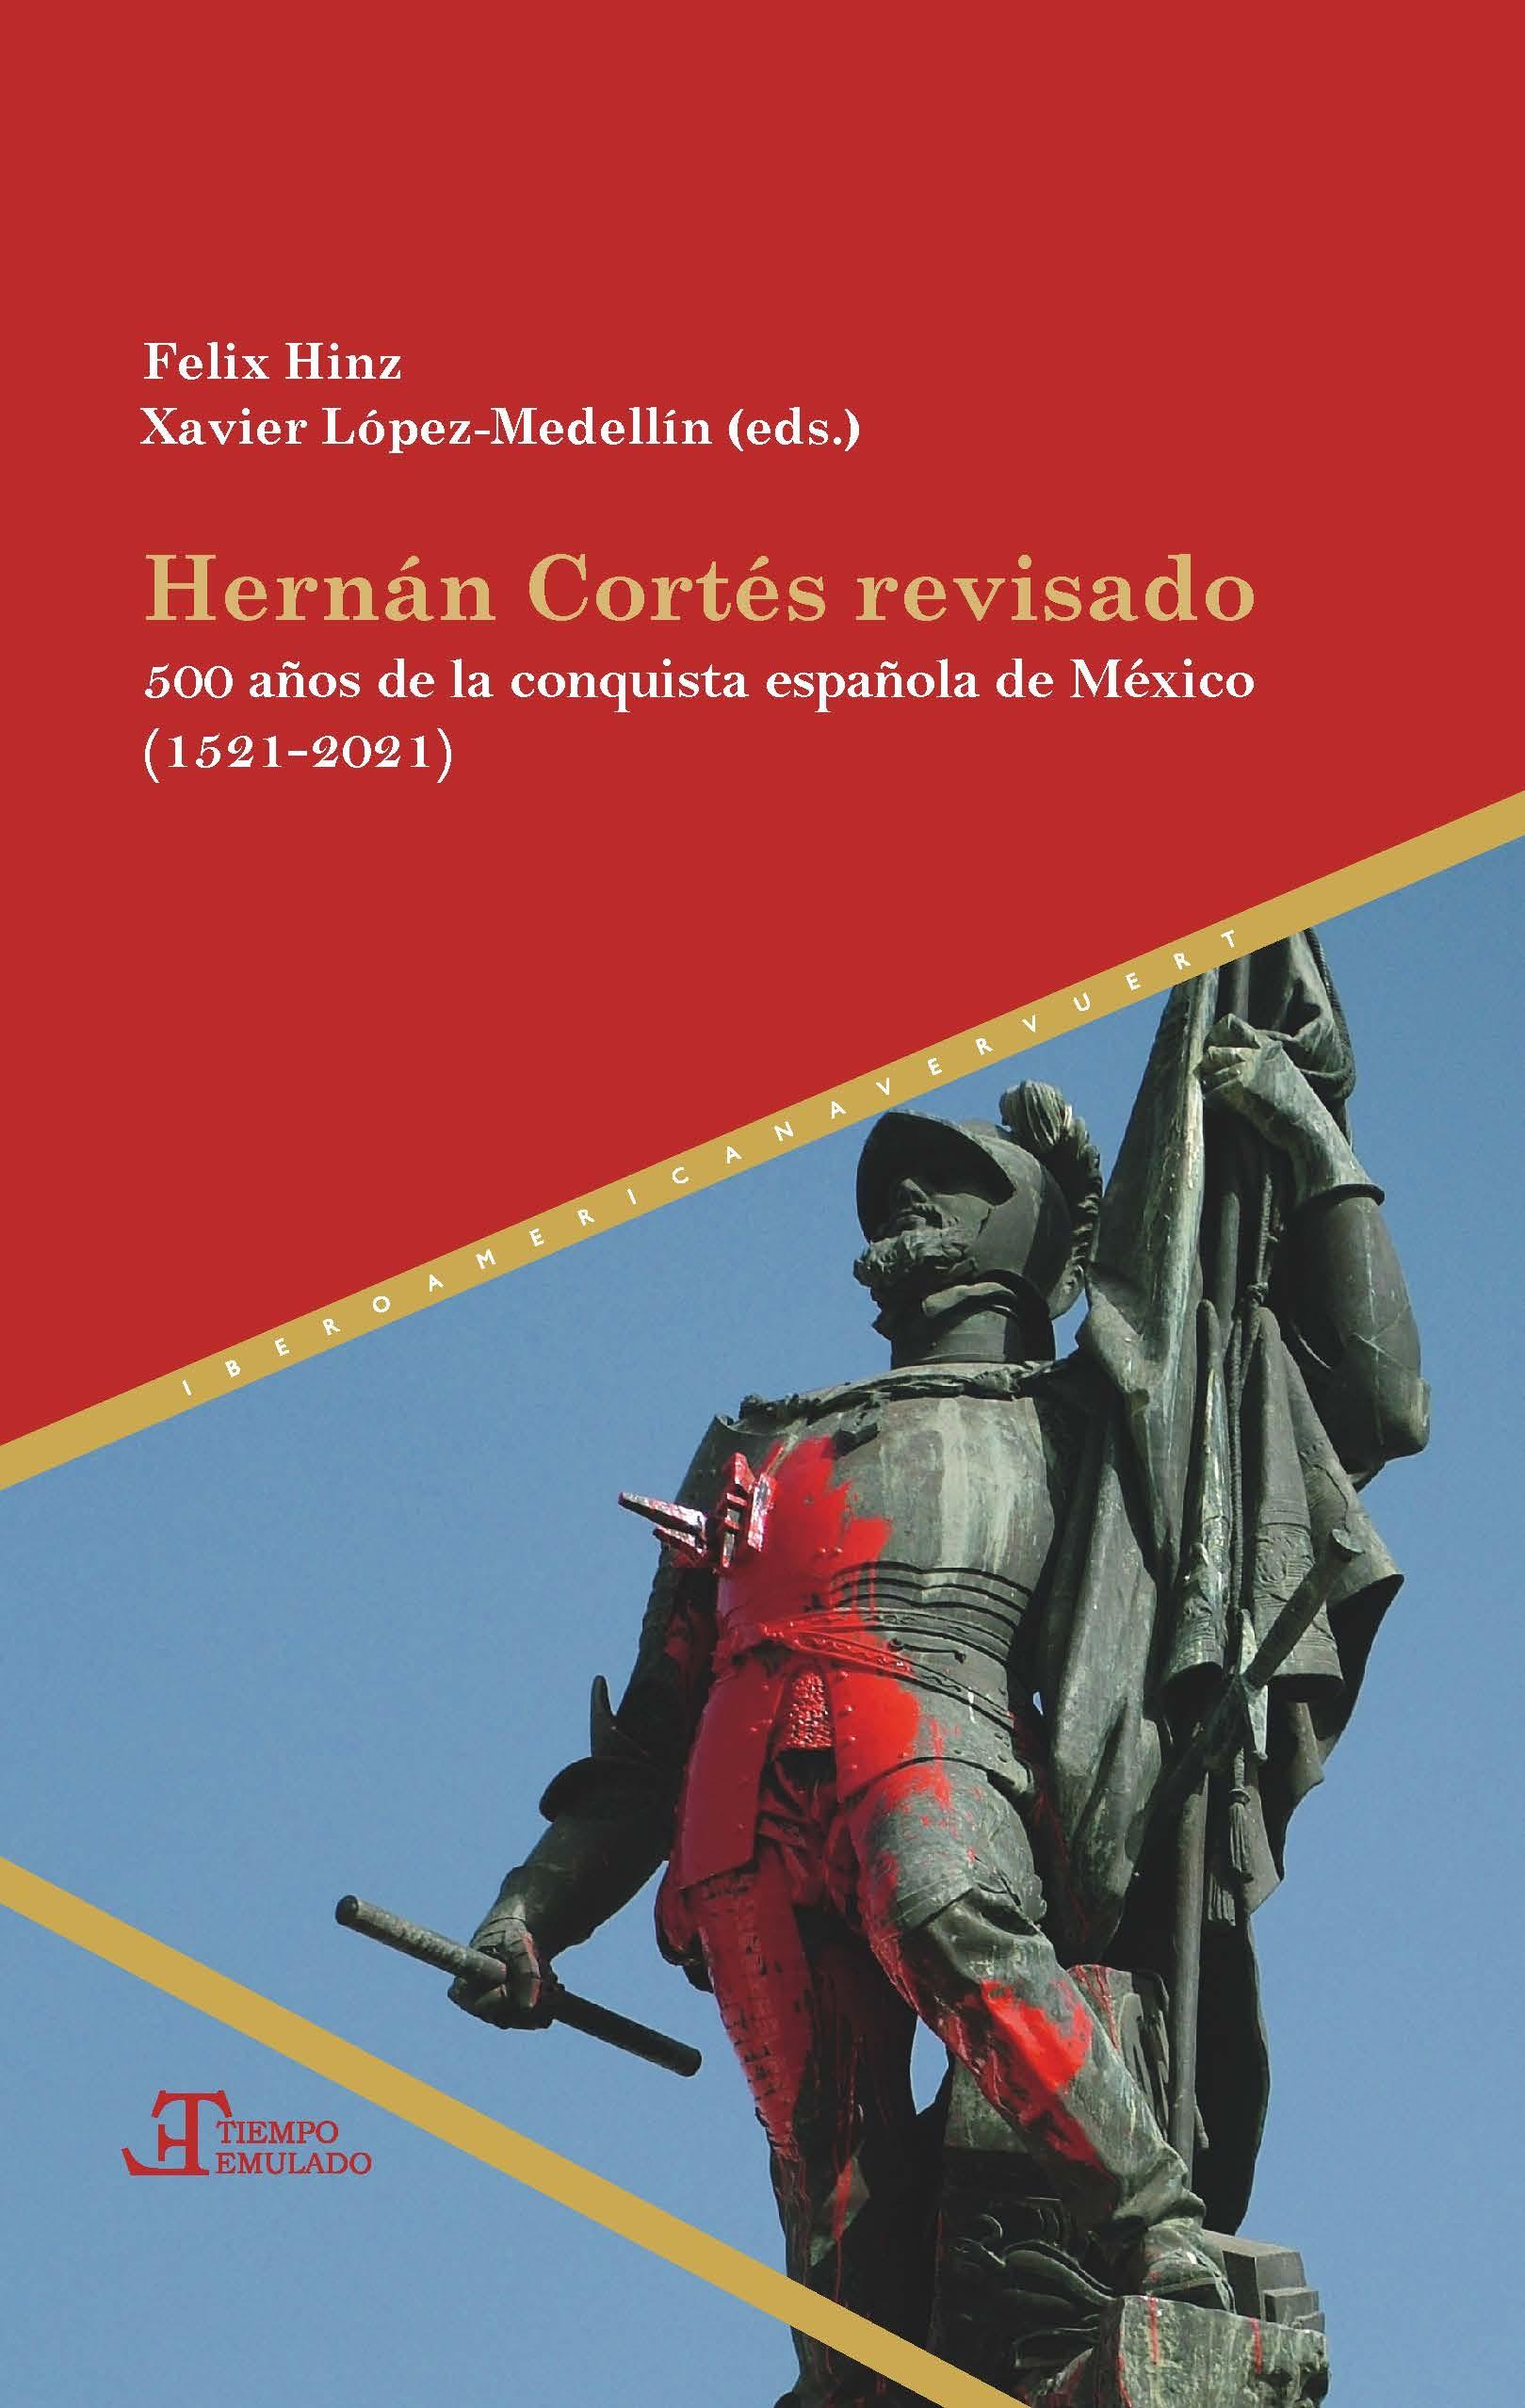 HERNAN CORTES REVISADO "500 AÑOS DE LA CONQUISTA ESPAÑOLA DE MEXICO (1521-2021)". 